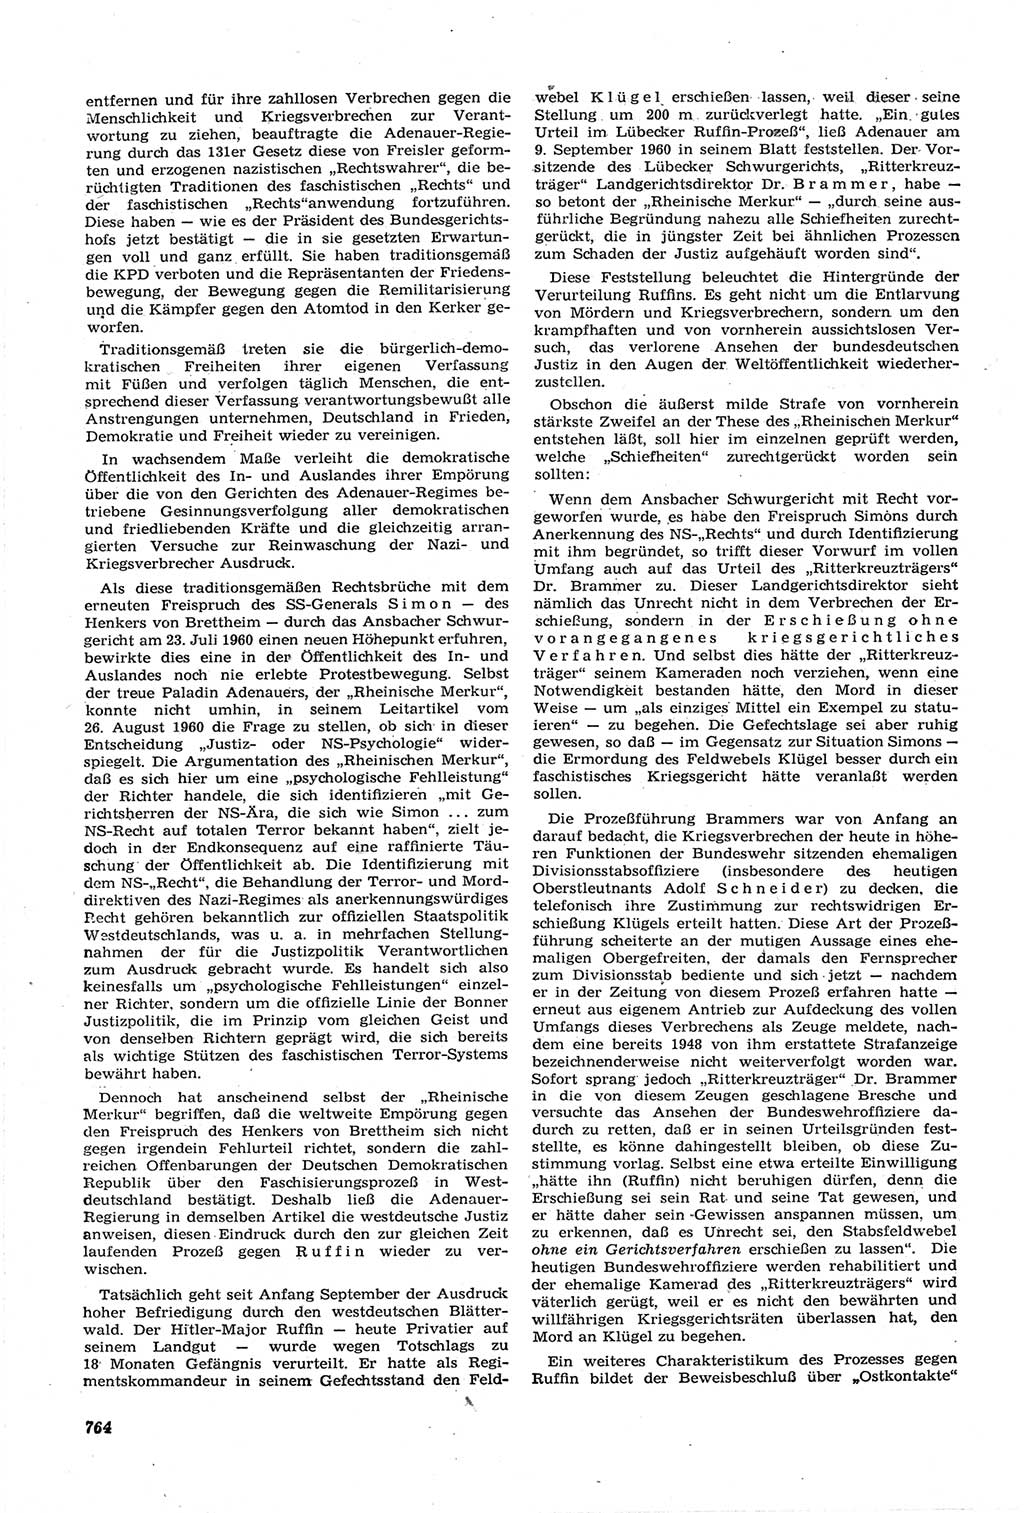 Neue Justiz (NJ), Zeitschrift für Recht und Rechtswissenschaft [Deutsche Demokratische Republik (DDR)], 14. Jahrgang 1960, Seite 764 (NJ DDR 1960, S. 764)